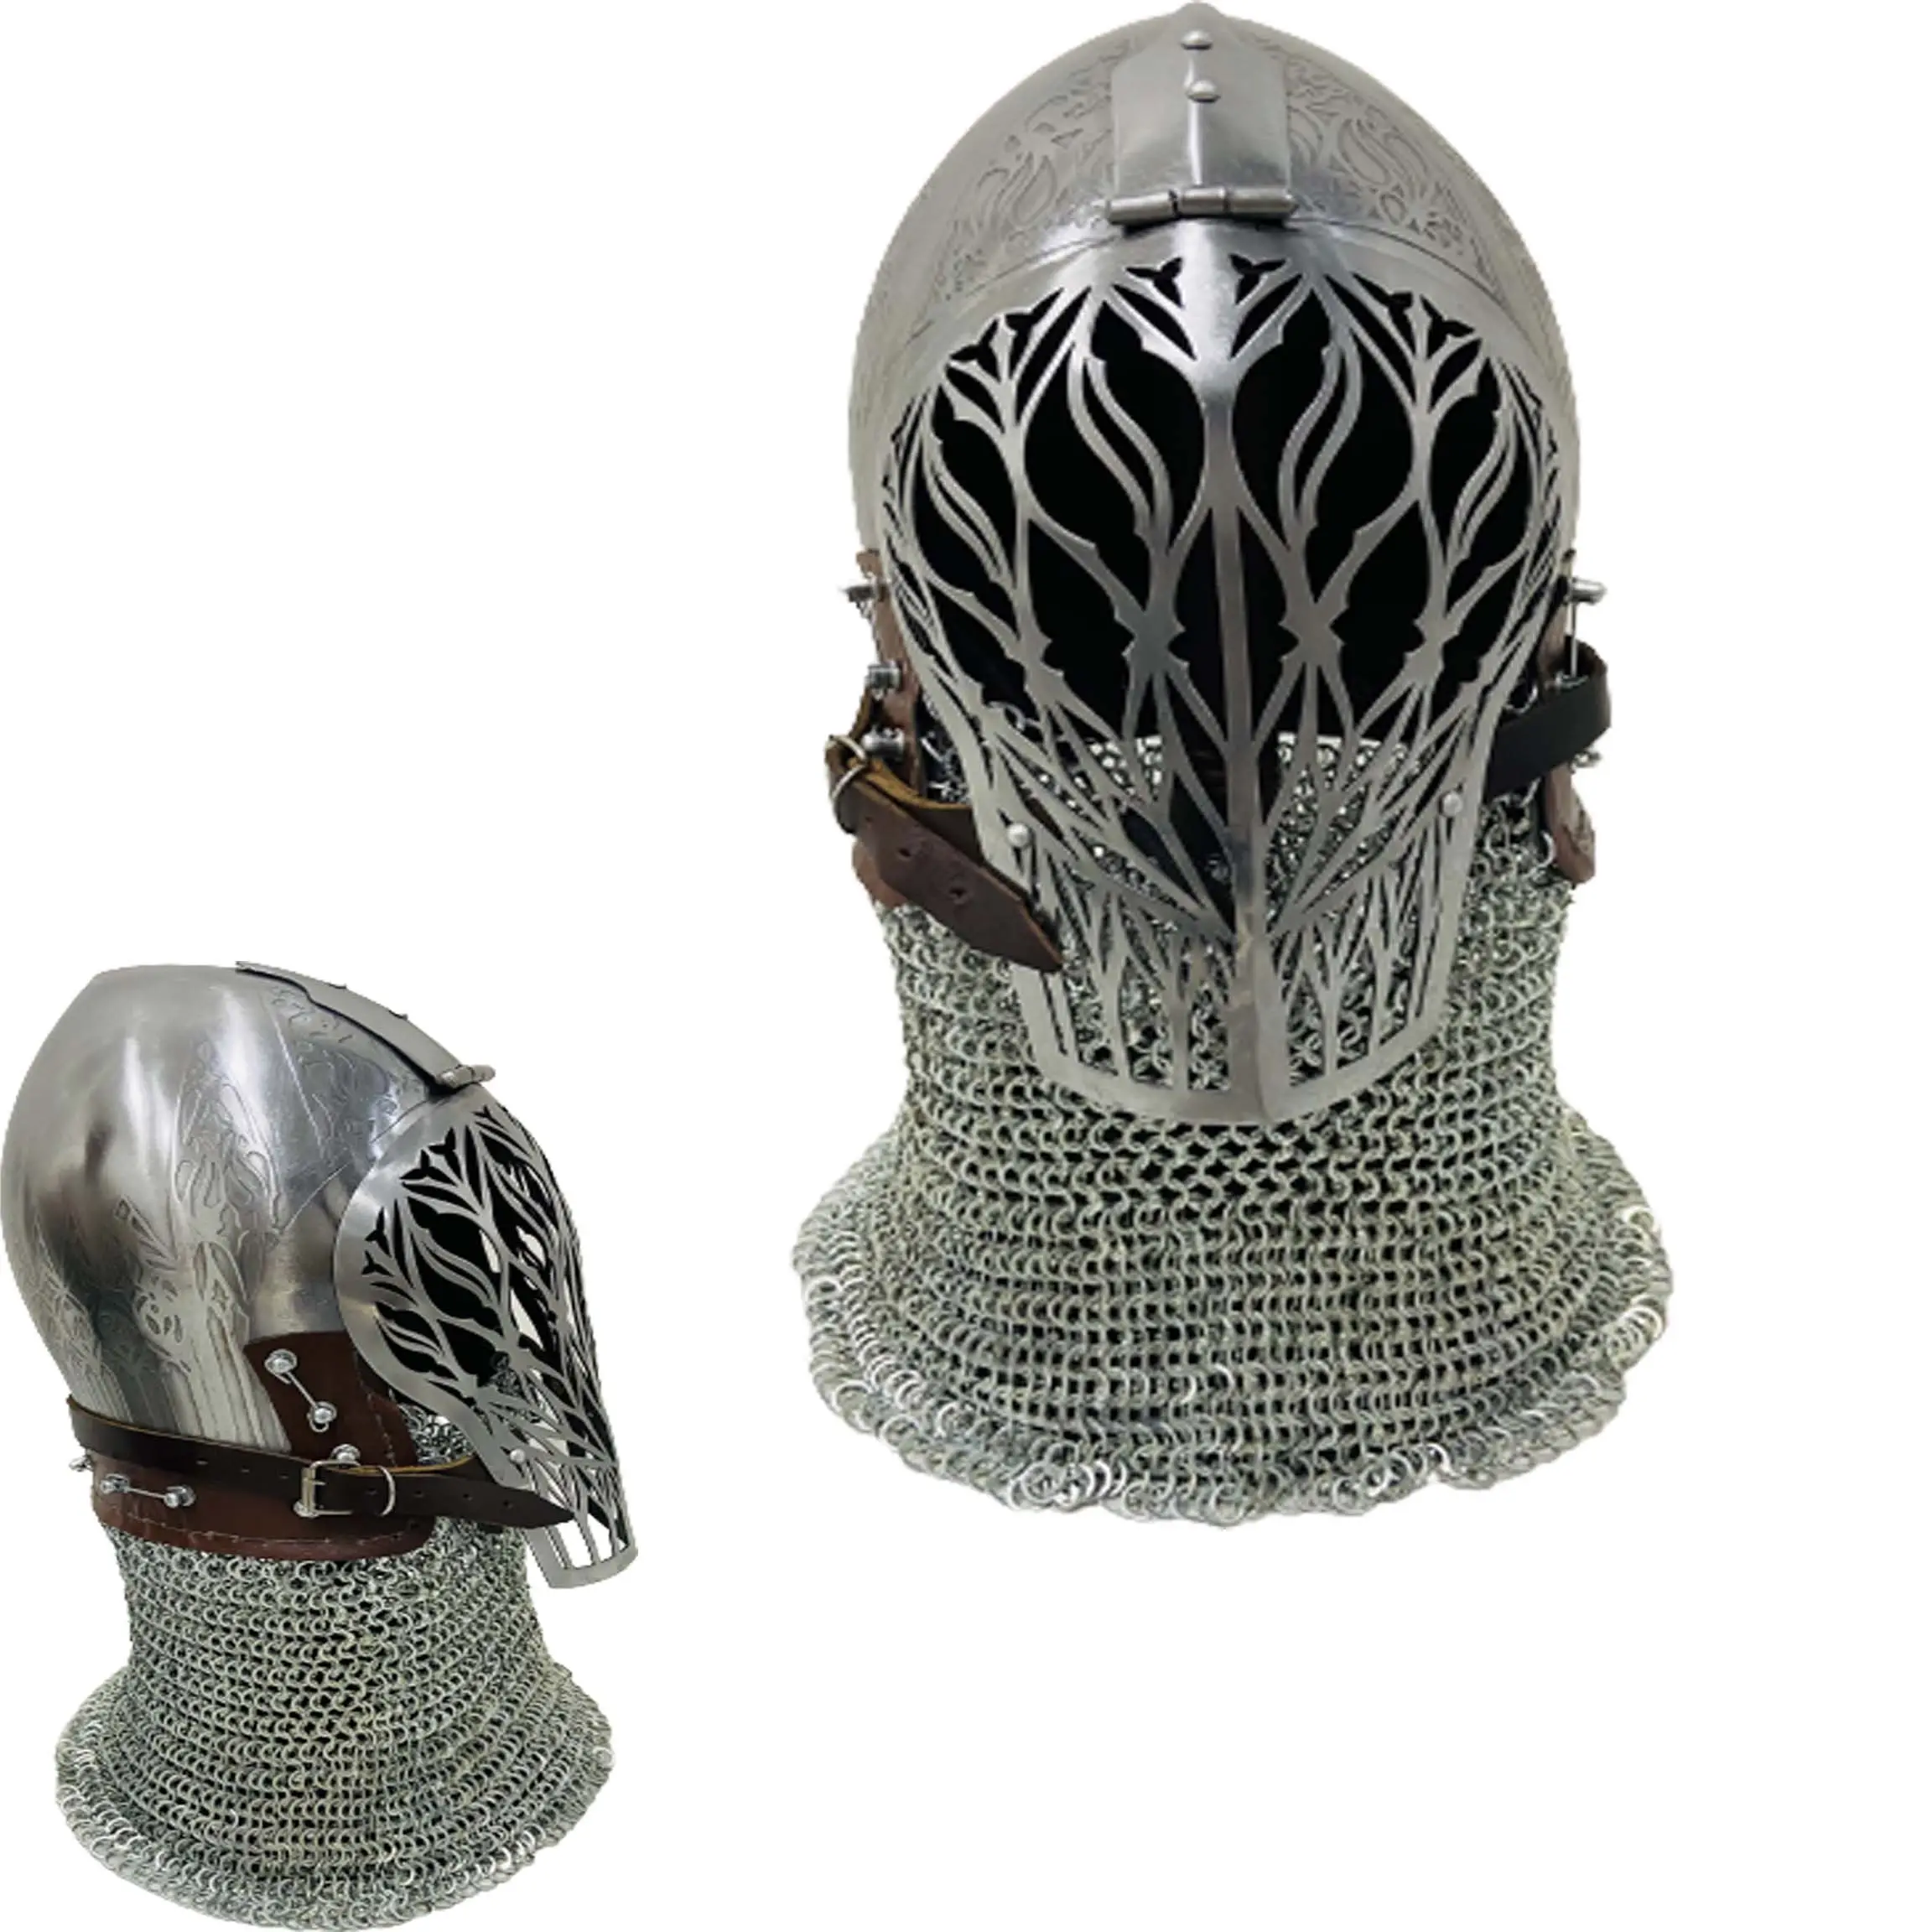 Capacete medieval viking com grade de barra, armadura fechada para combate, capacete de prata com suporte, capacete de rosto inteiro com acabamento prateado